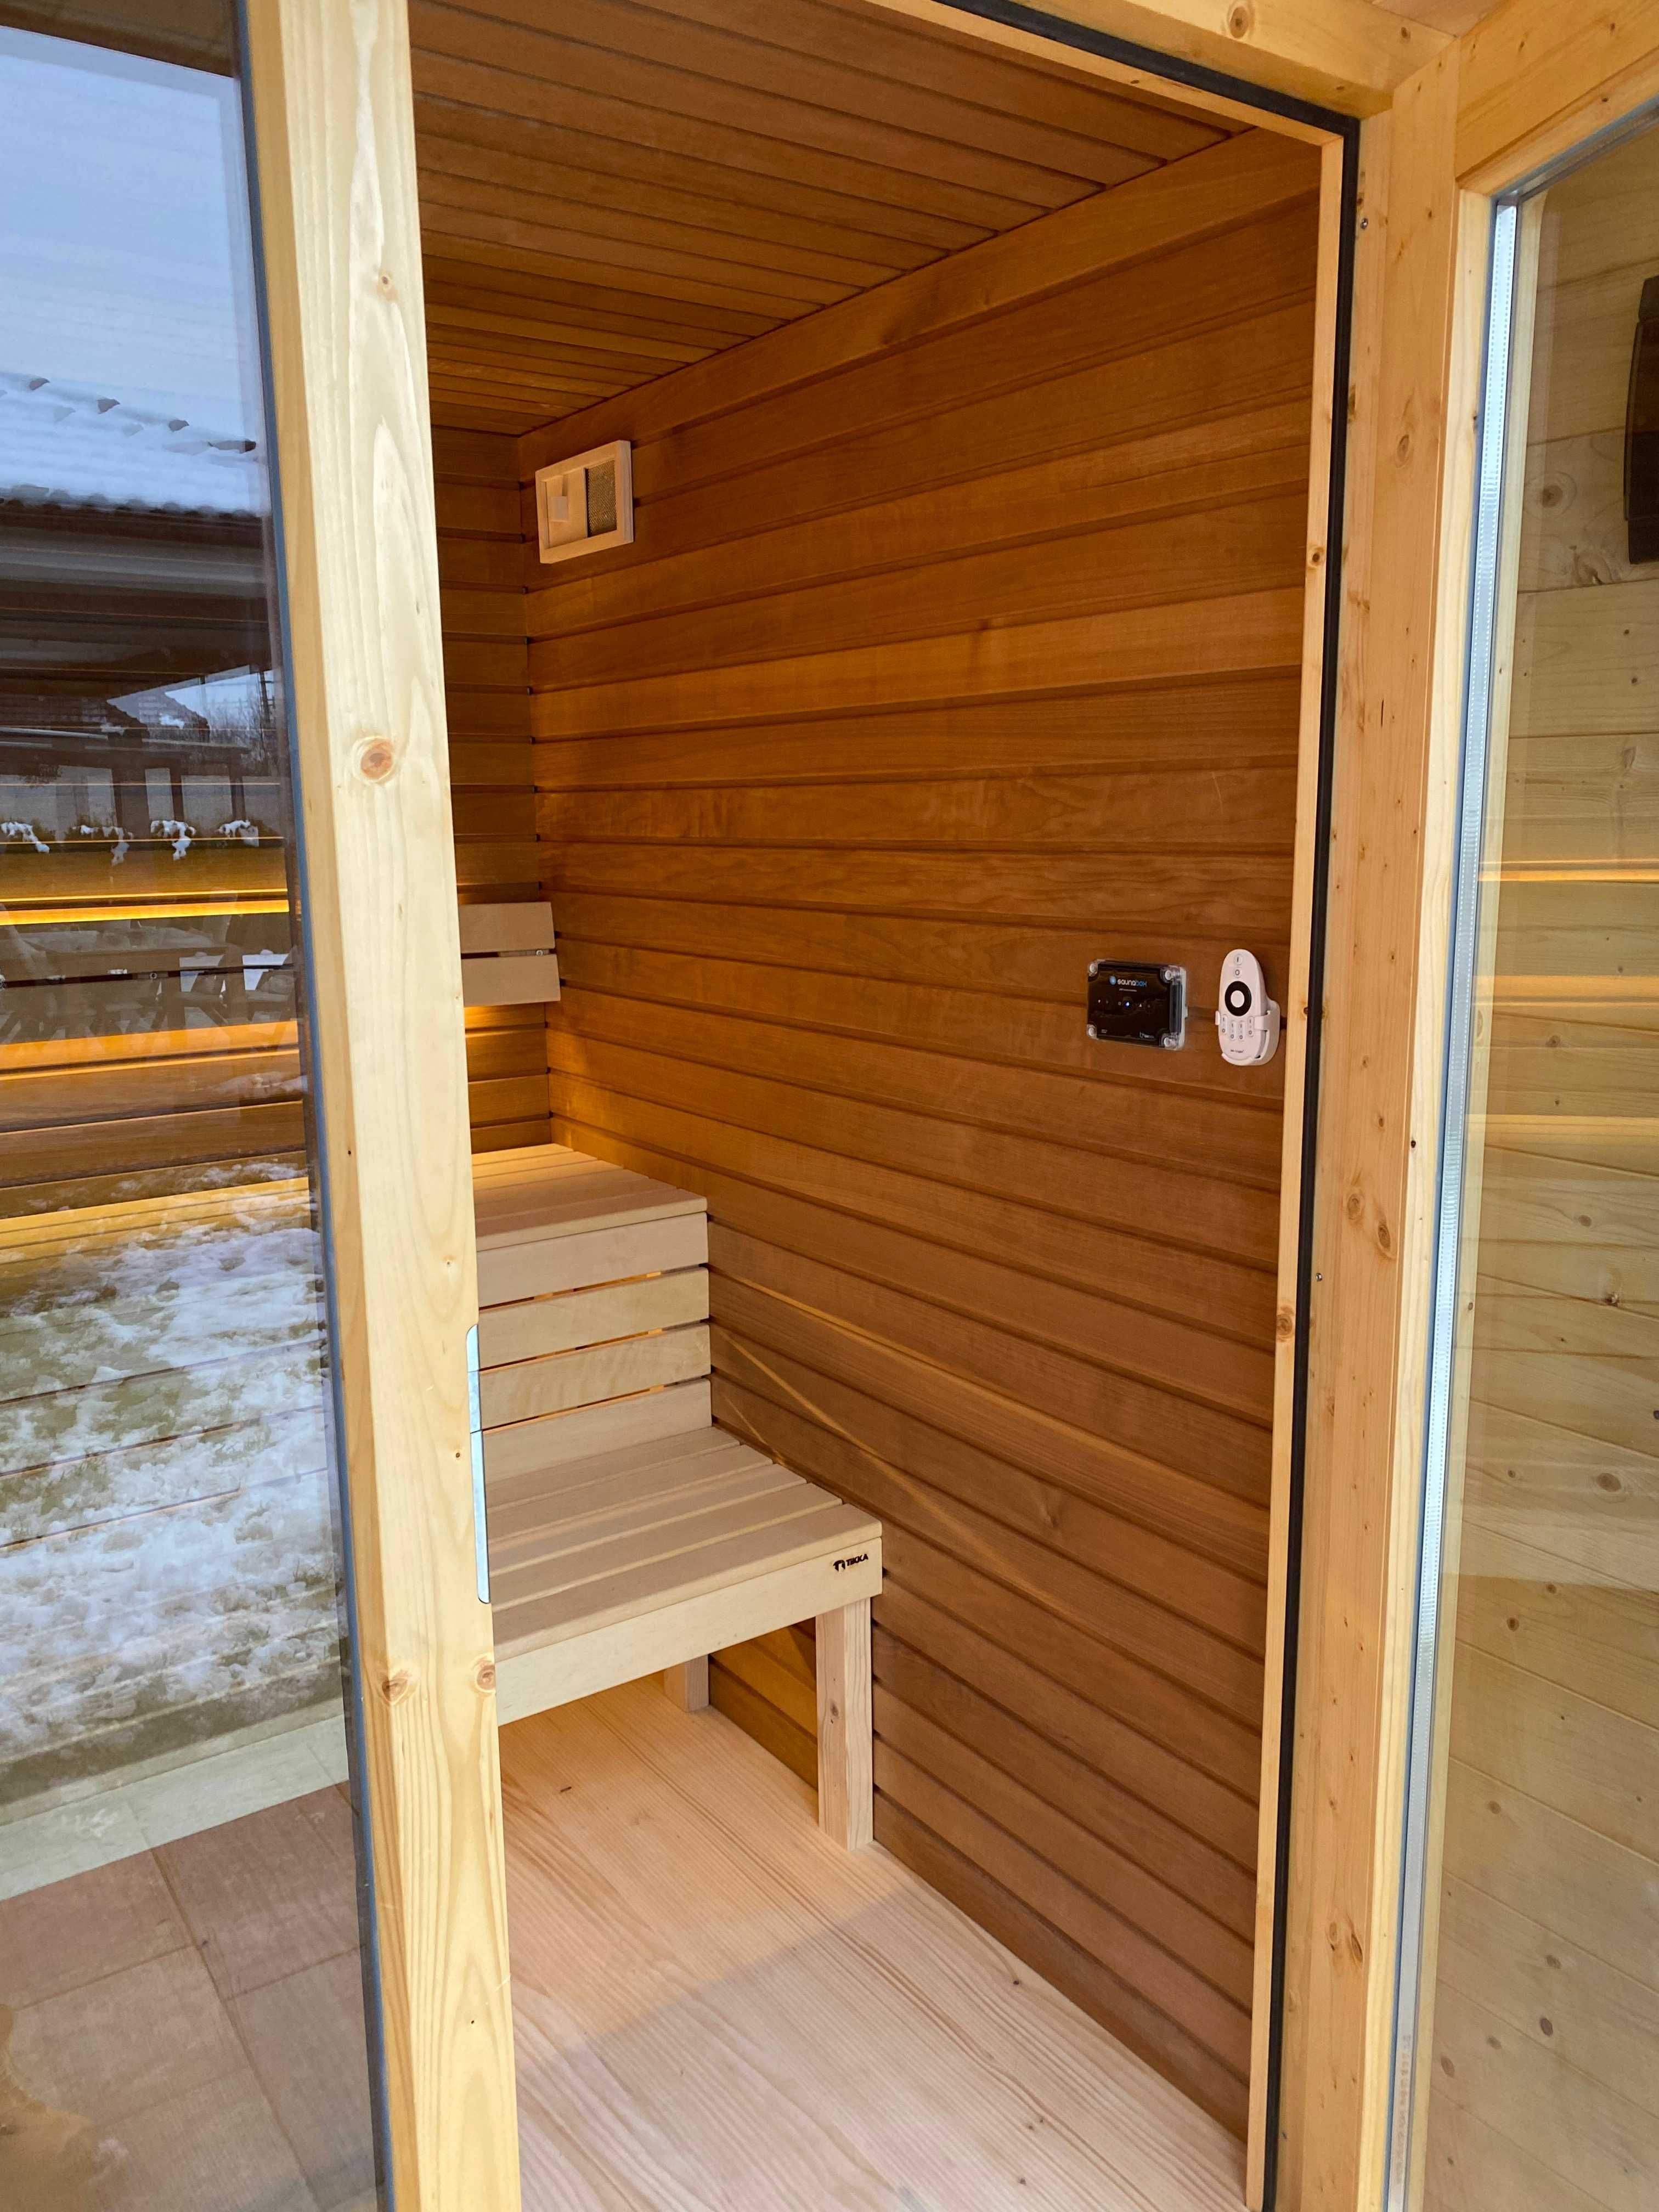 Ekskluzywna Sauna Fińska Ocieplona, Z Wi-Fi Gotowa do Twojego ogrodu:)